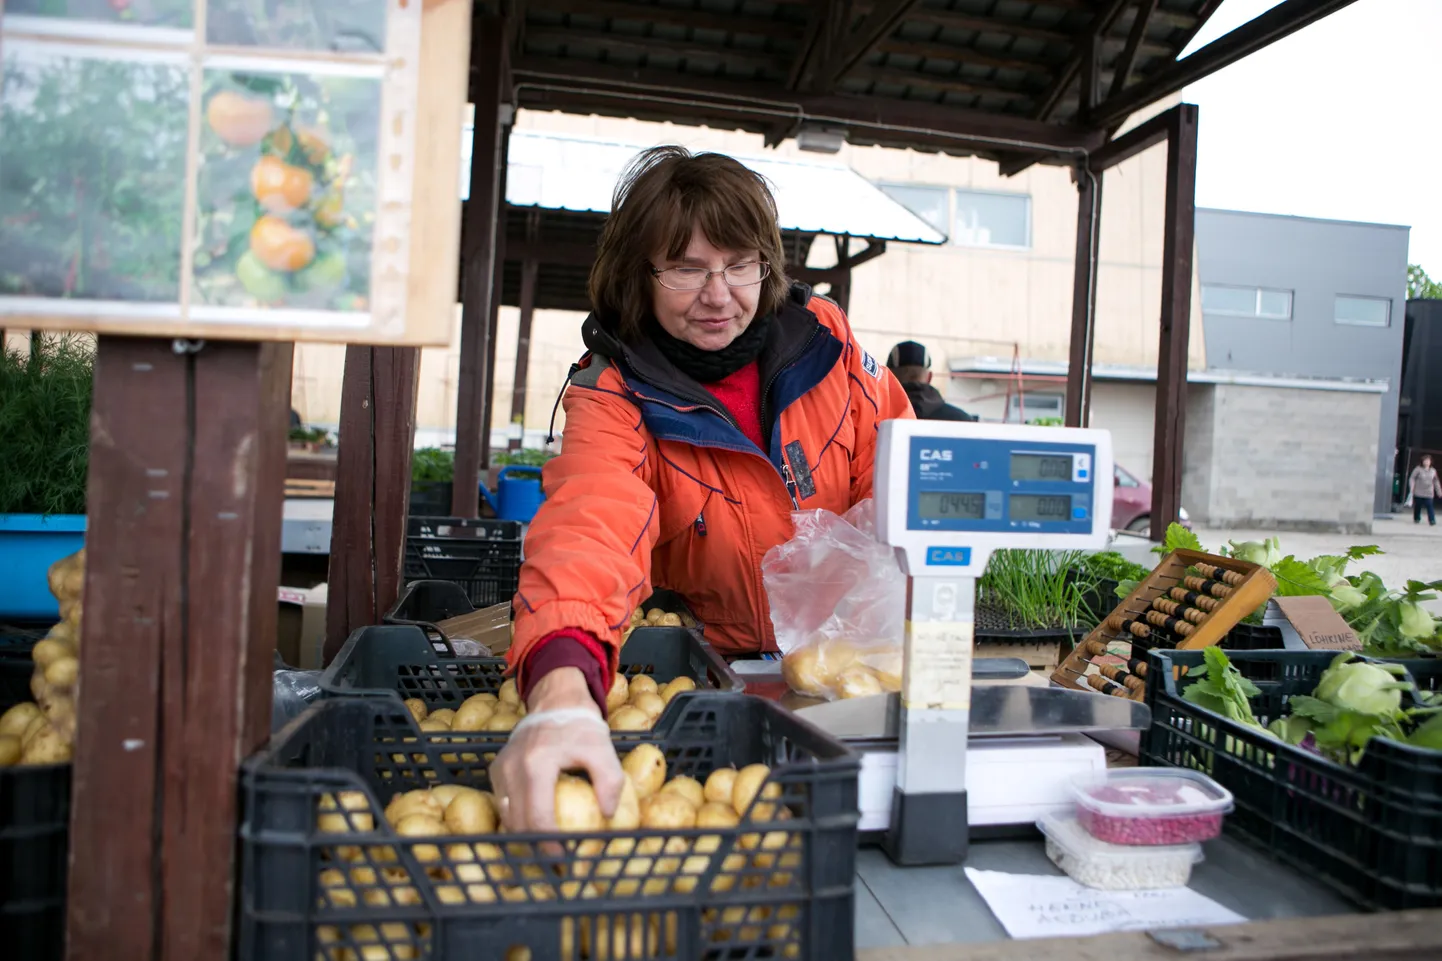 Esmaspäeval müüs Viljandi turul Nõmme talu kartulit Anu Keerov.